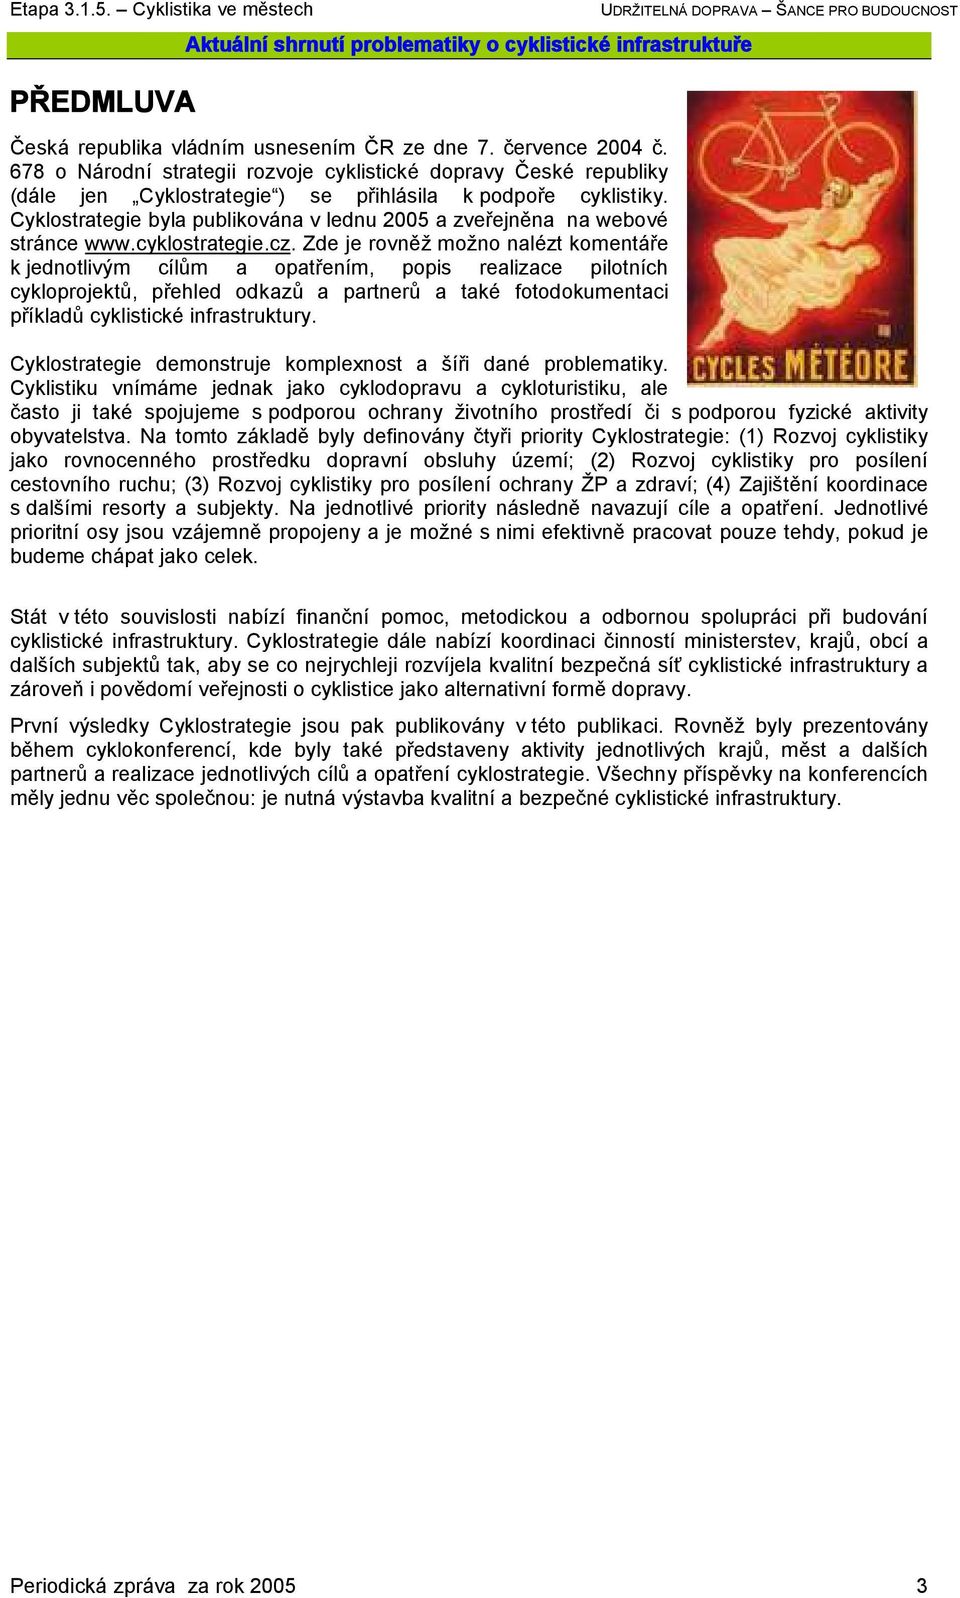 Cyklostrategie byla publikována v lednu 2005 a zveřejněna na webové stránce www.cyklostrategie.cz.